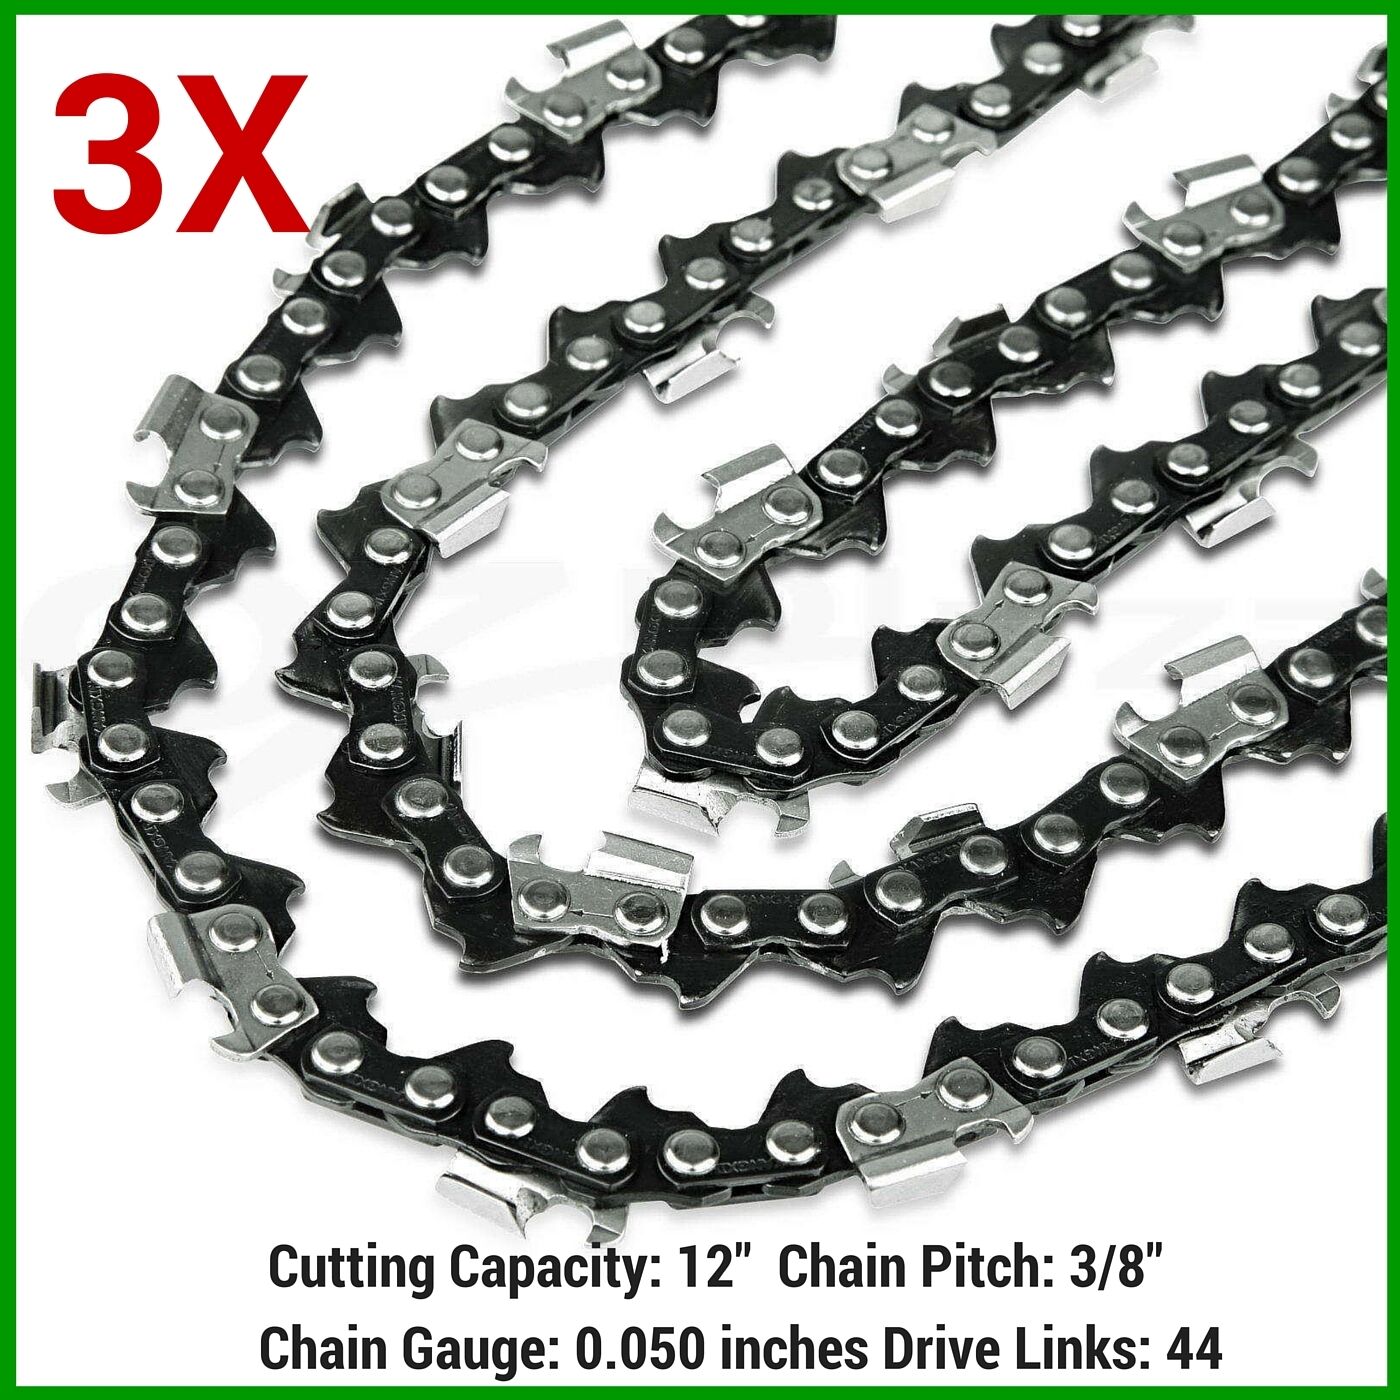 3X Chainsaw Chain For Giantz 4-Stroke 40cc Pole Chainsaw 12" Bar (3 x Chain)